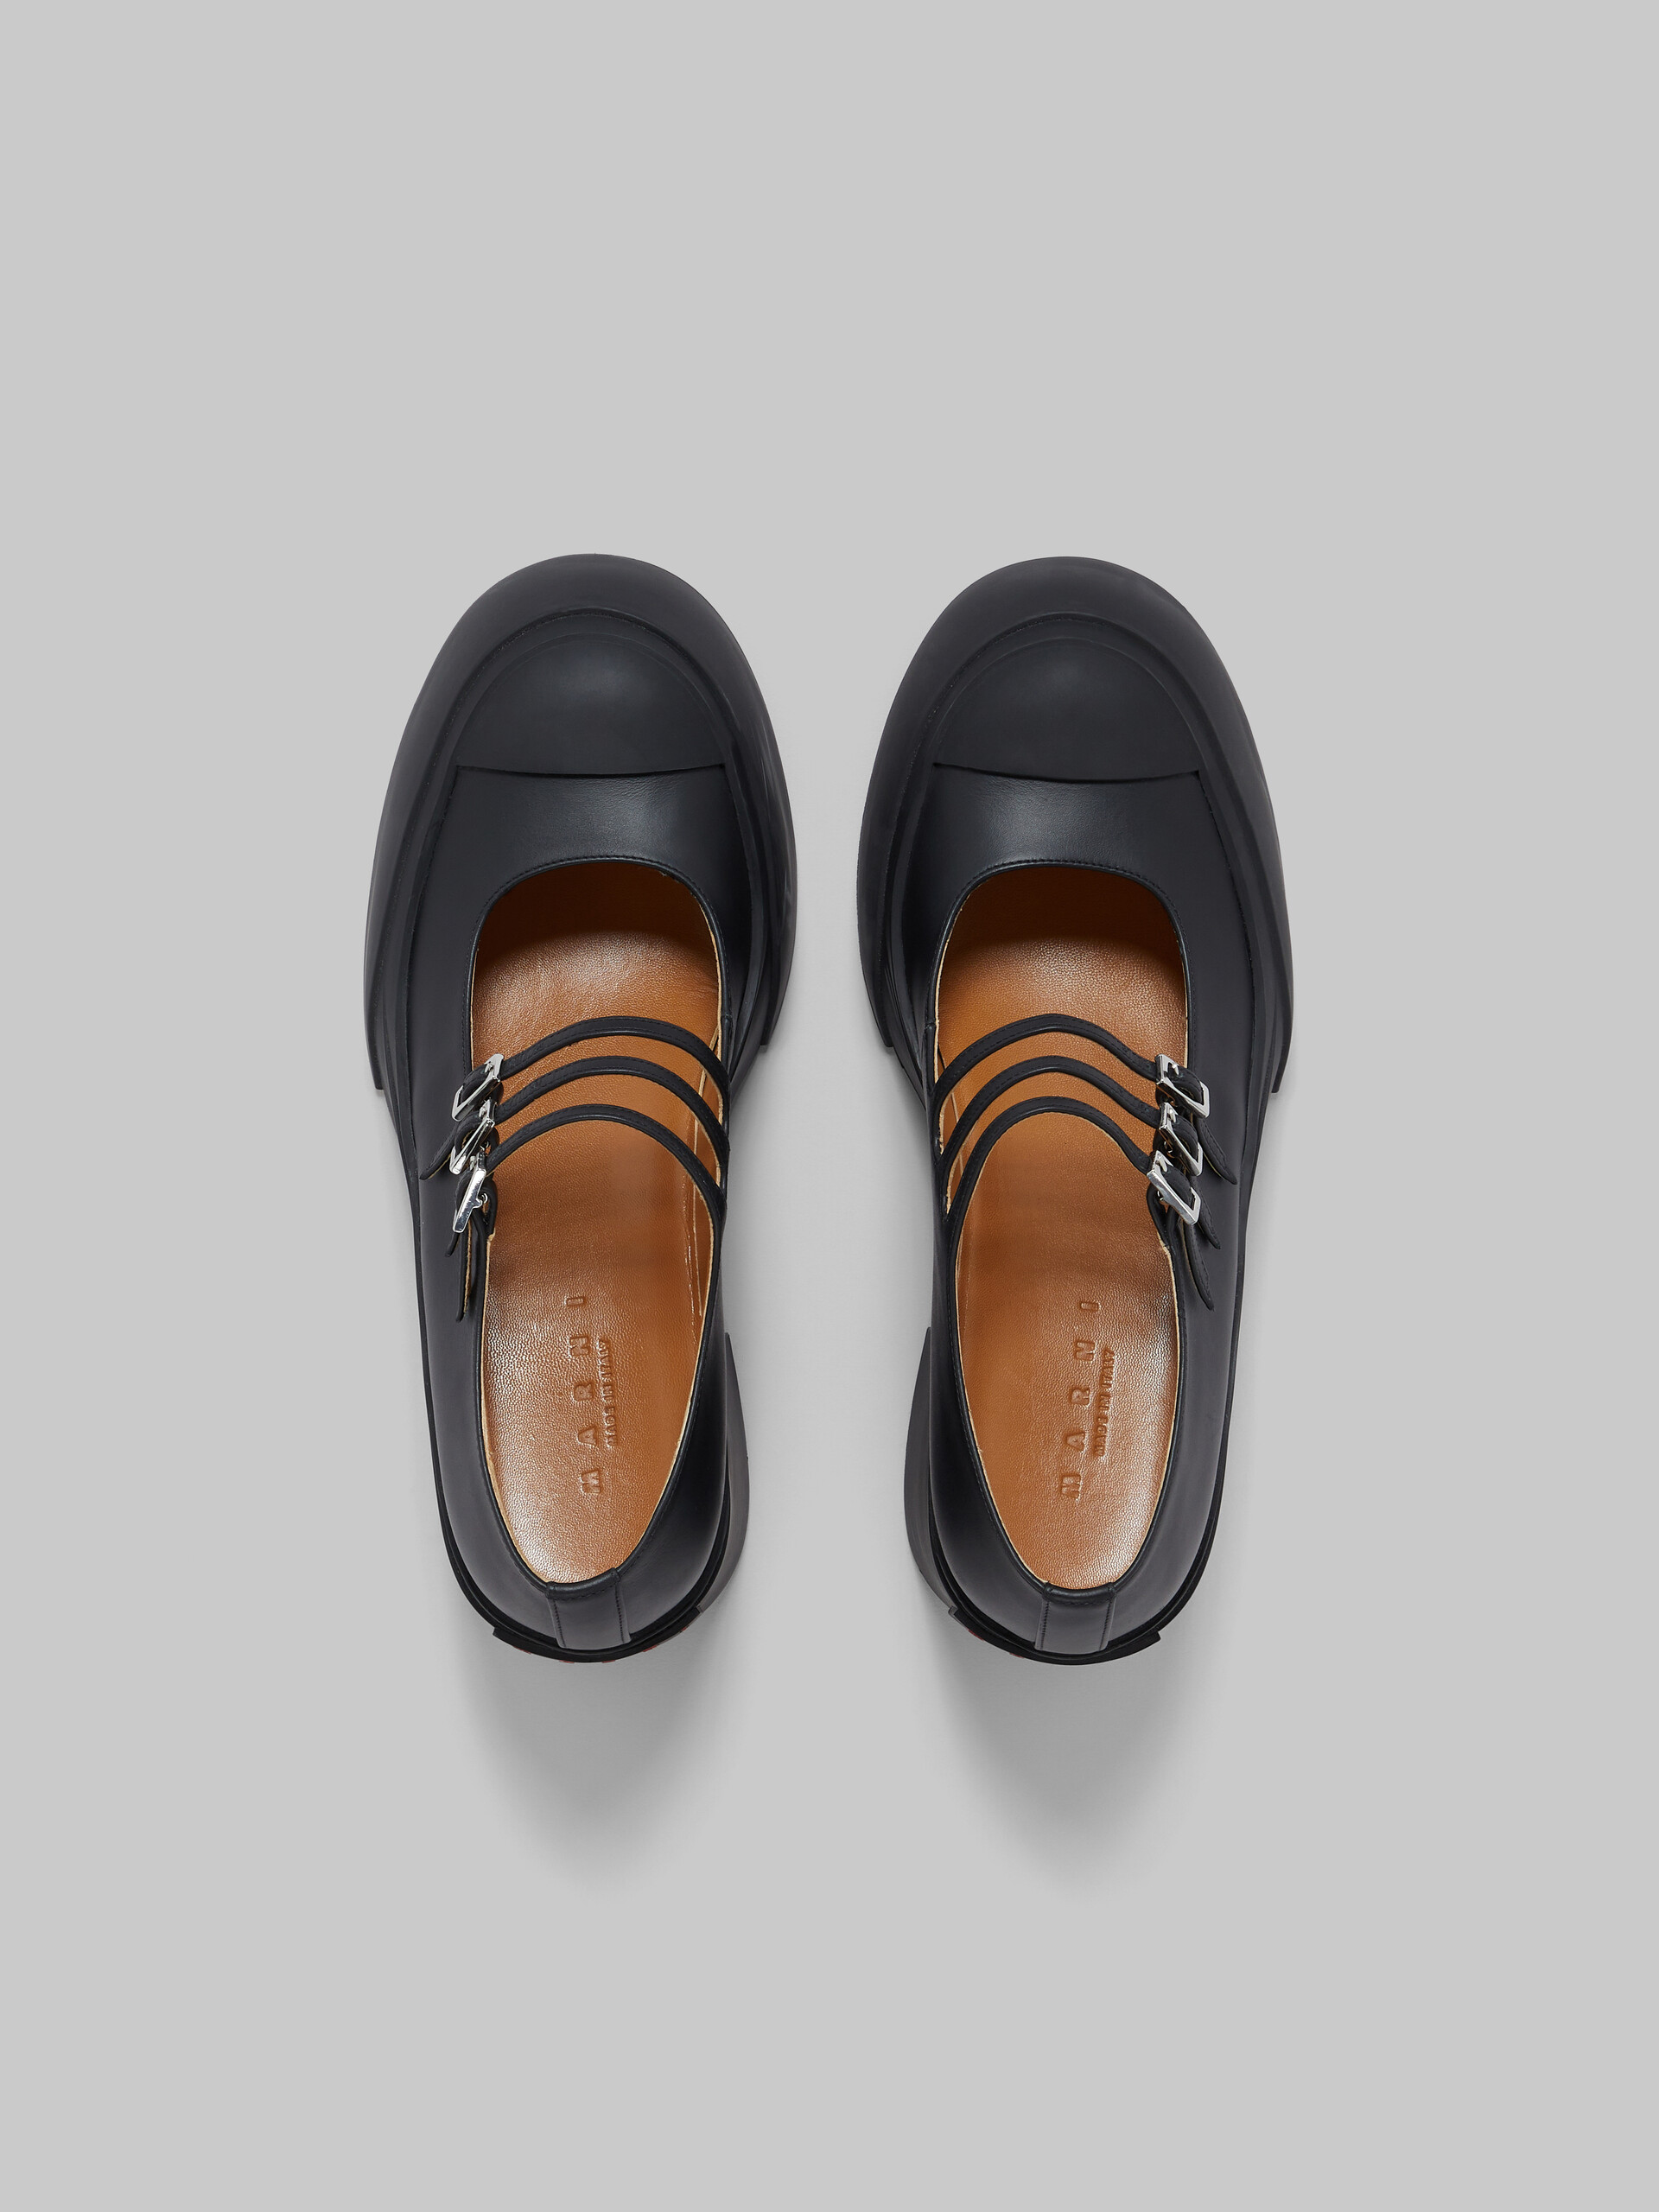 Scarpa Pablo Mary Jane in pelle nera con triplo cinturino - Sneakers - Image 4